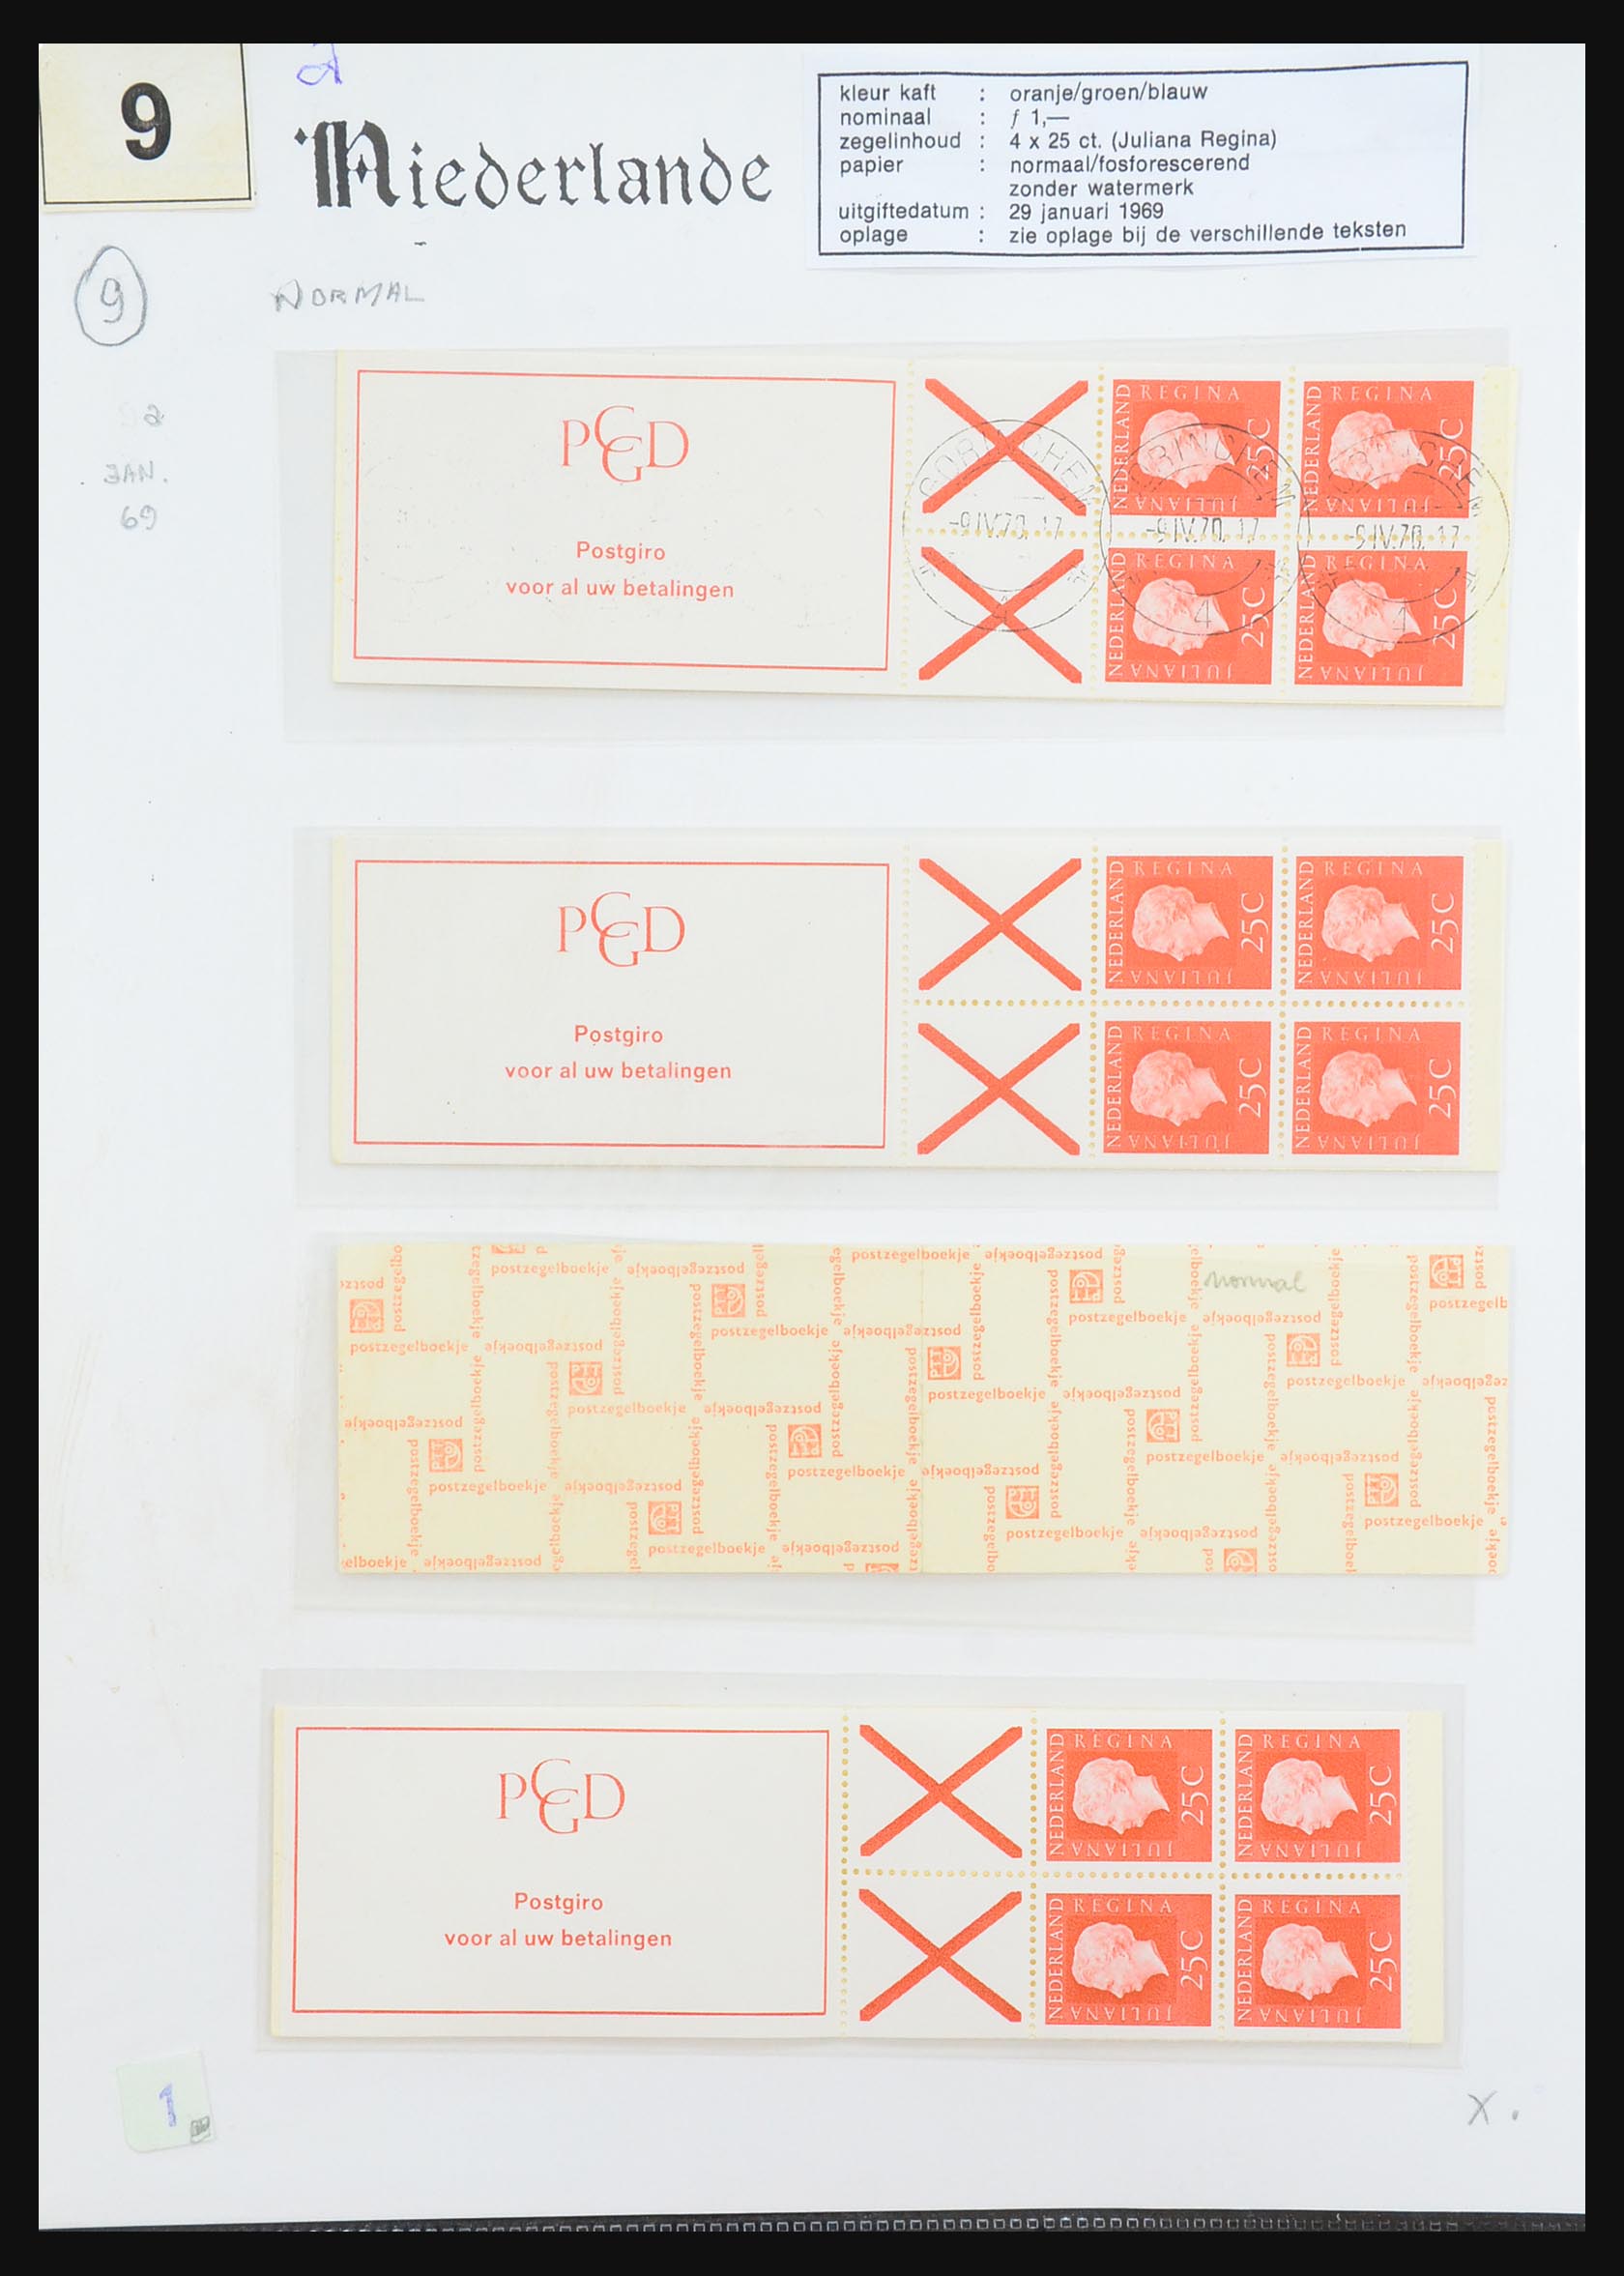 31311 034 - 31311 Netherlands stamp booklets 1964-1994.